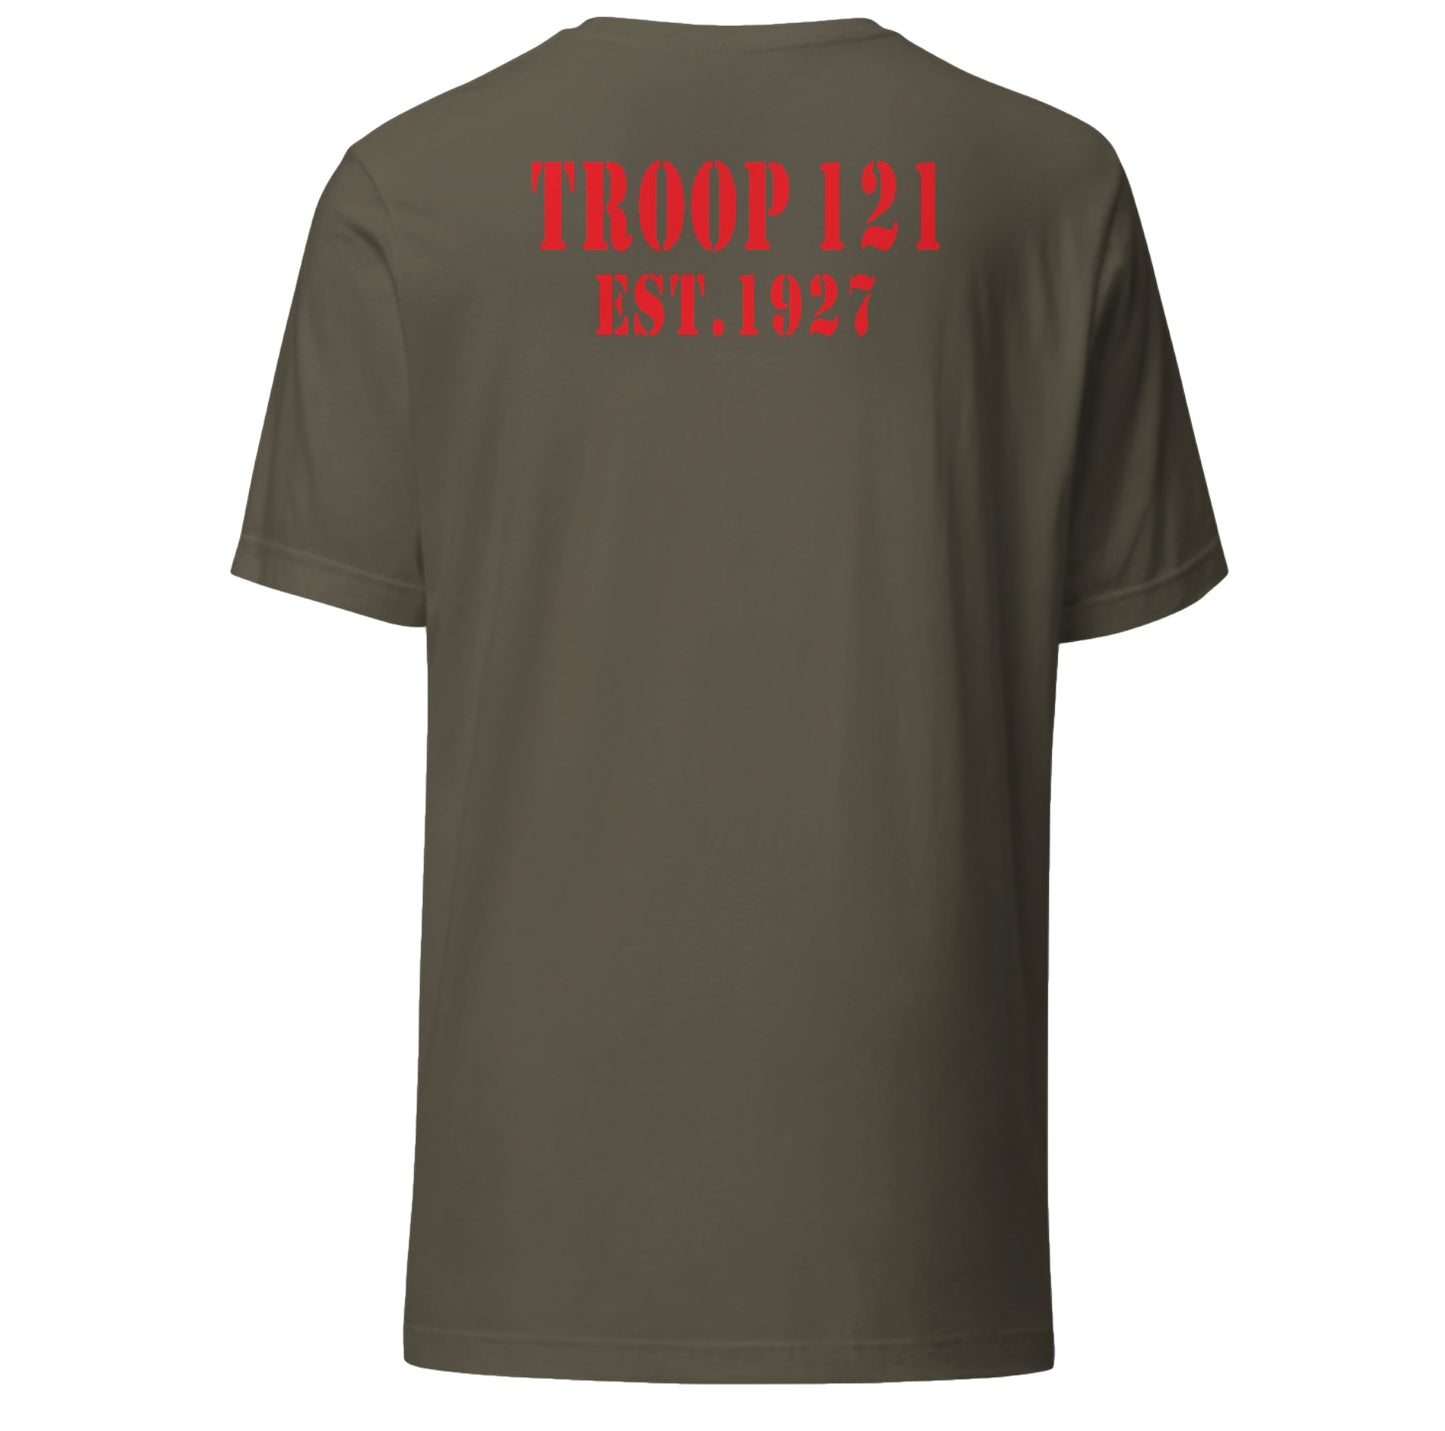 Official Troop 121 Tee